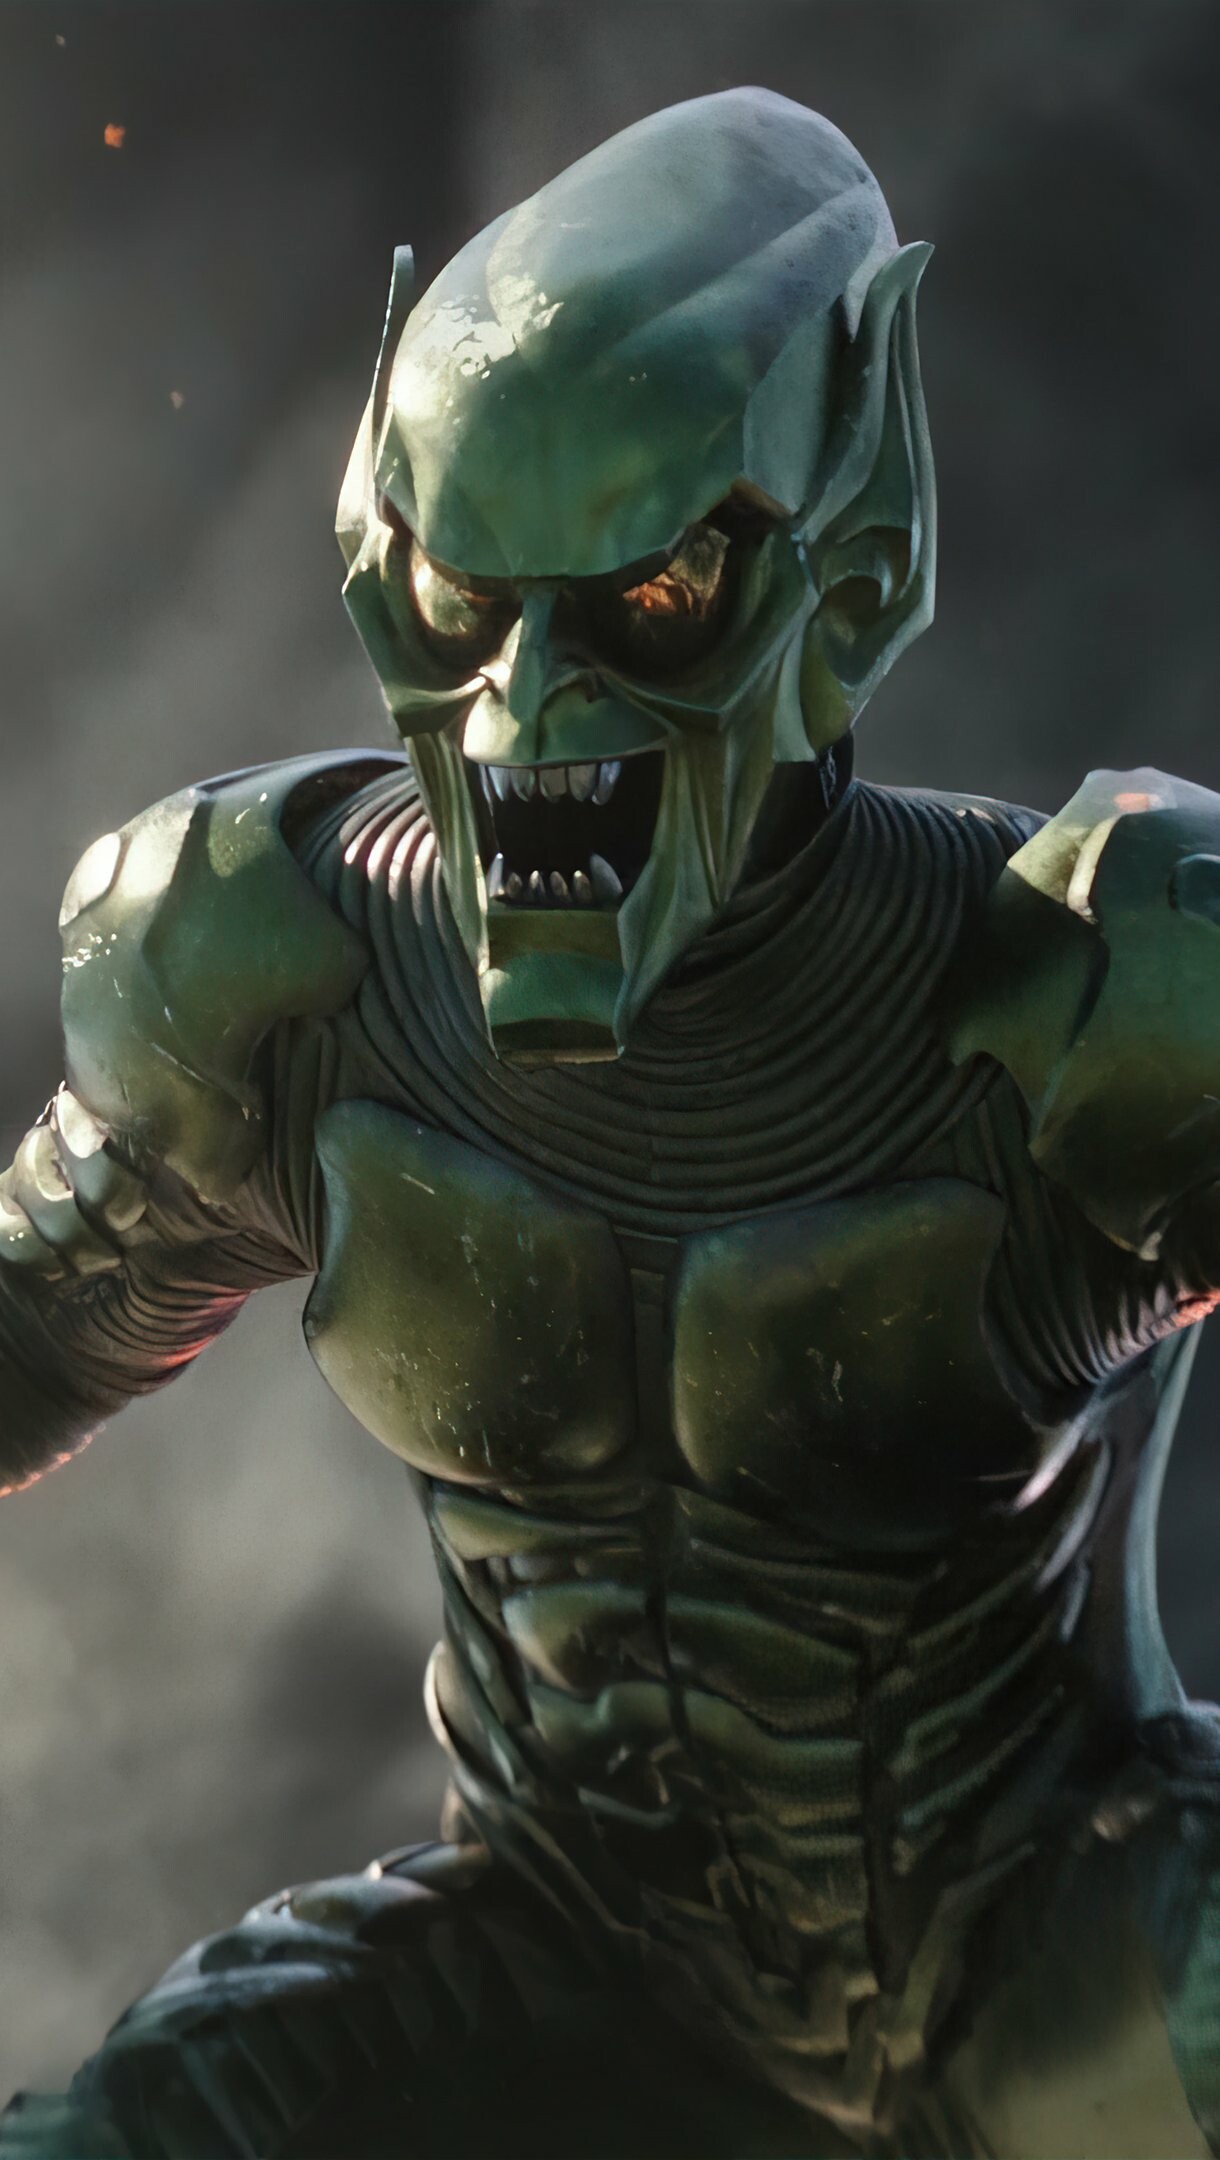 Green Goblin: Norman Osborn, Superhuman strength, a heightened intellect and an accelerated healing factor. 1220x2160 HD Wallpaper.